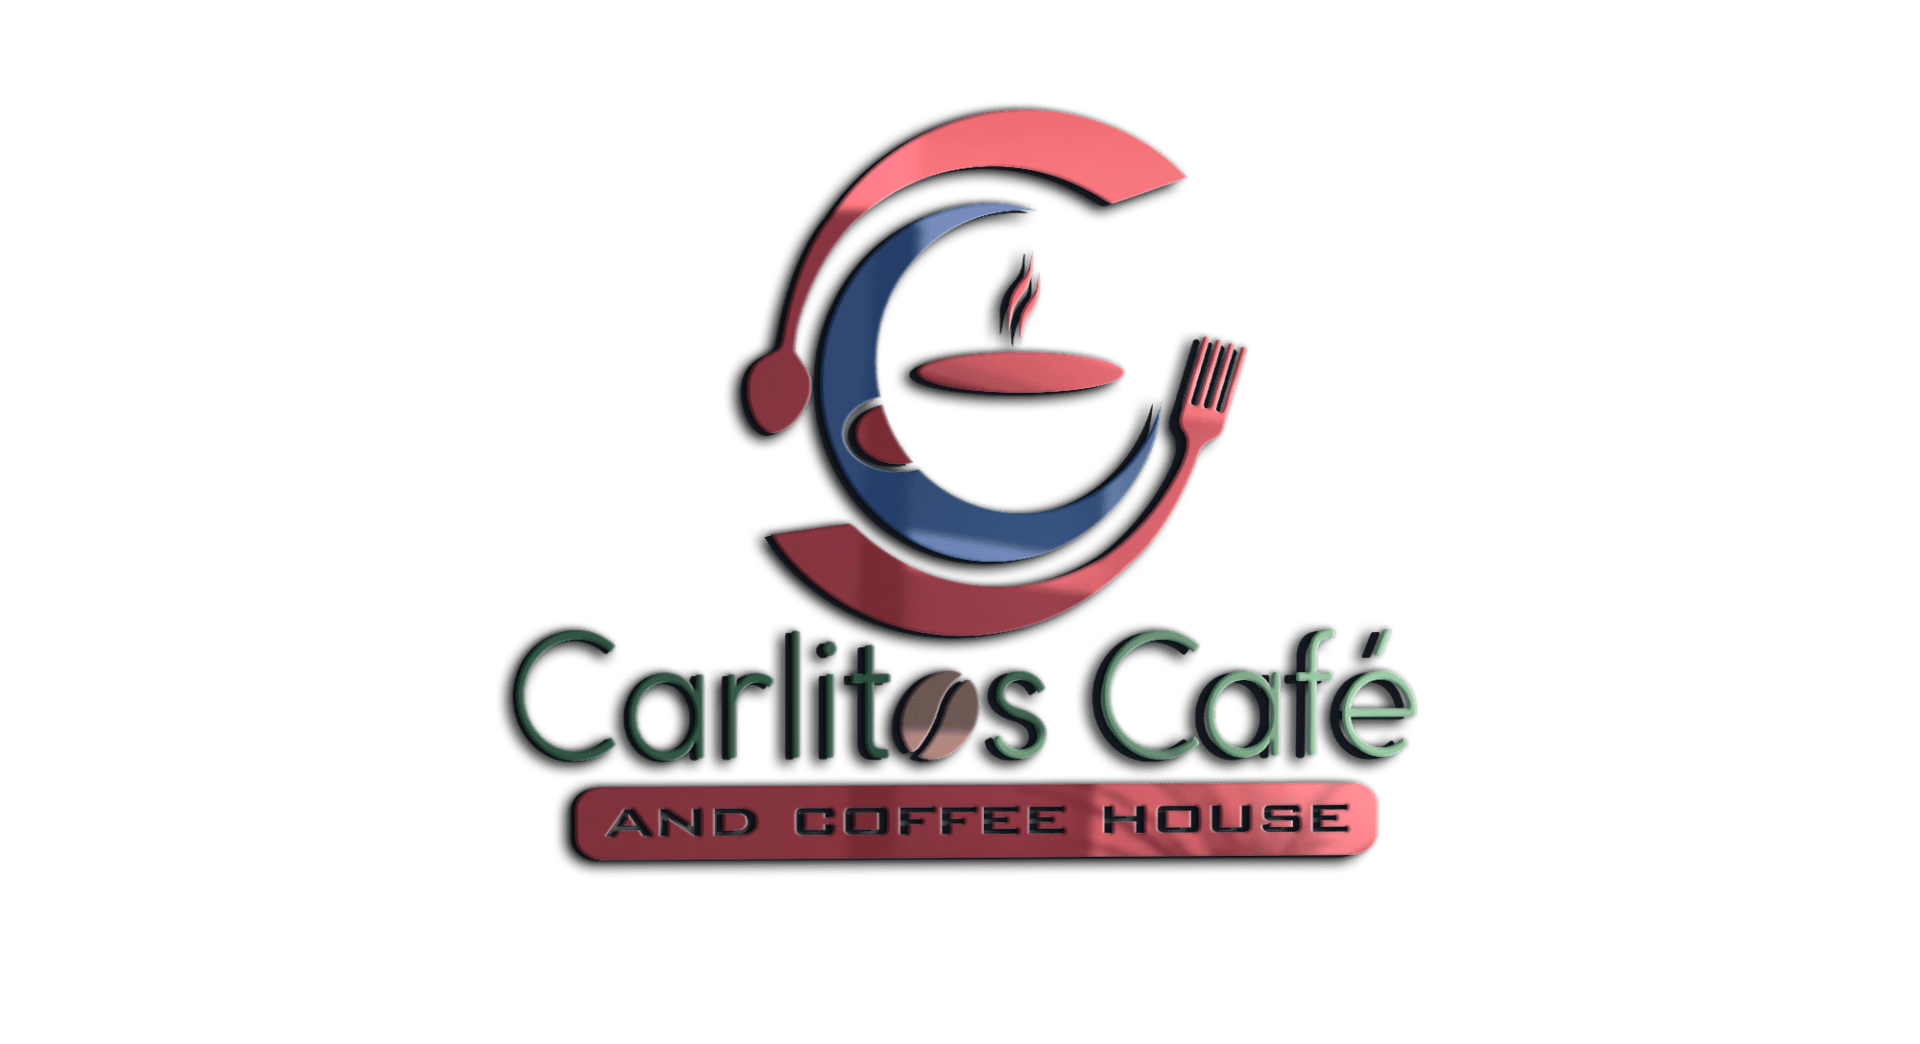 Carlitos Cafe and Coffee House logo